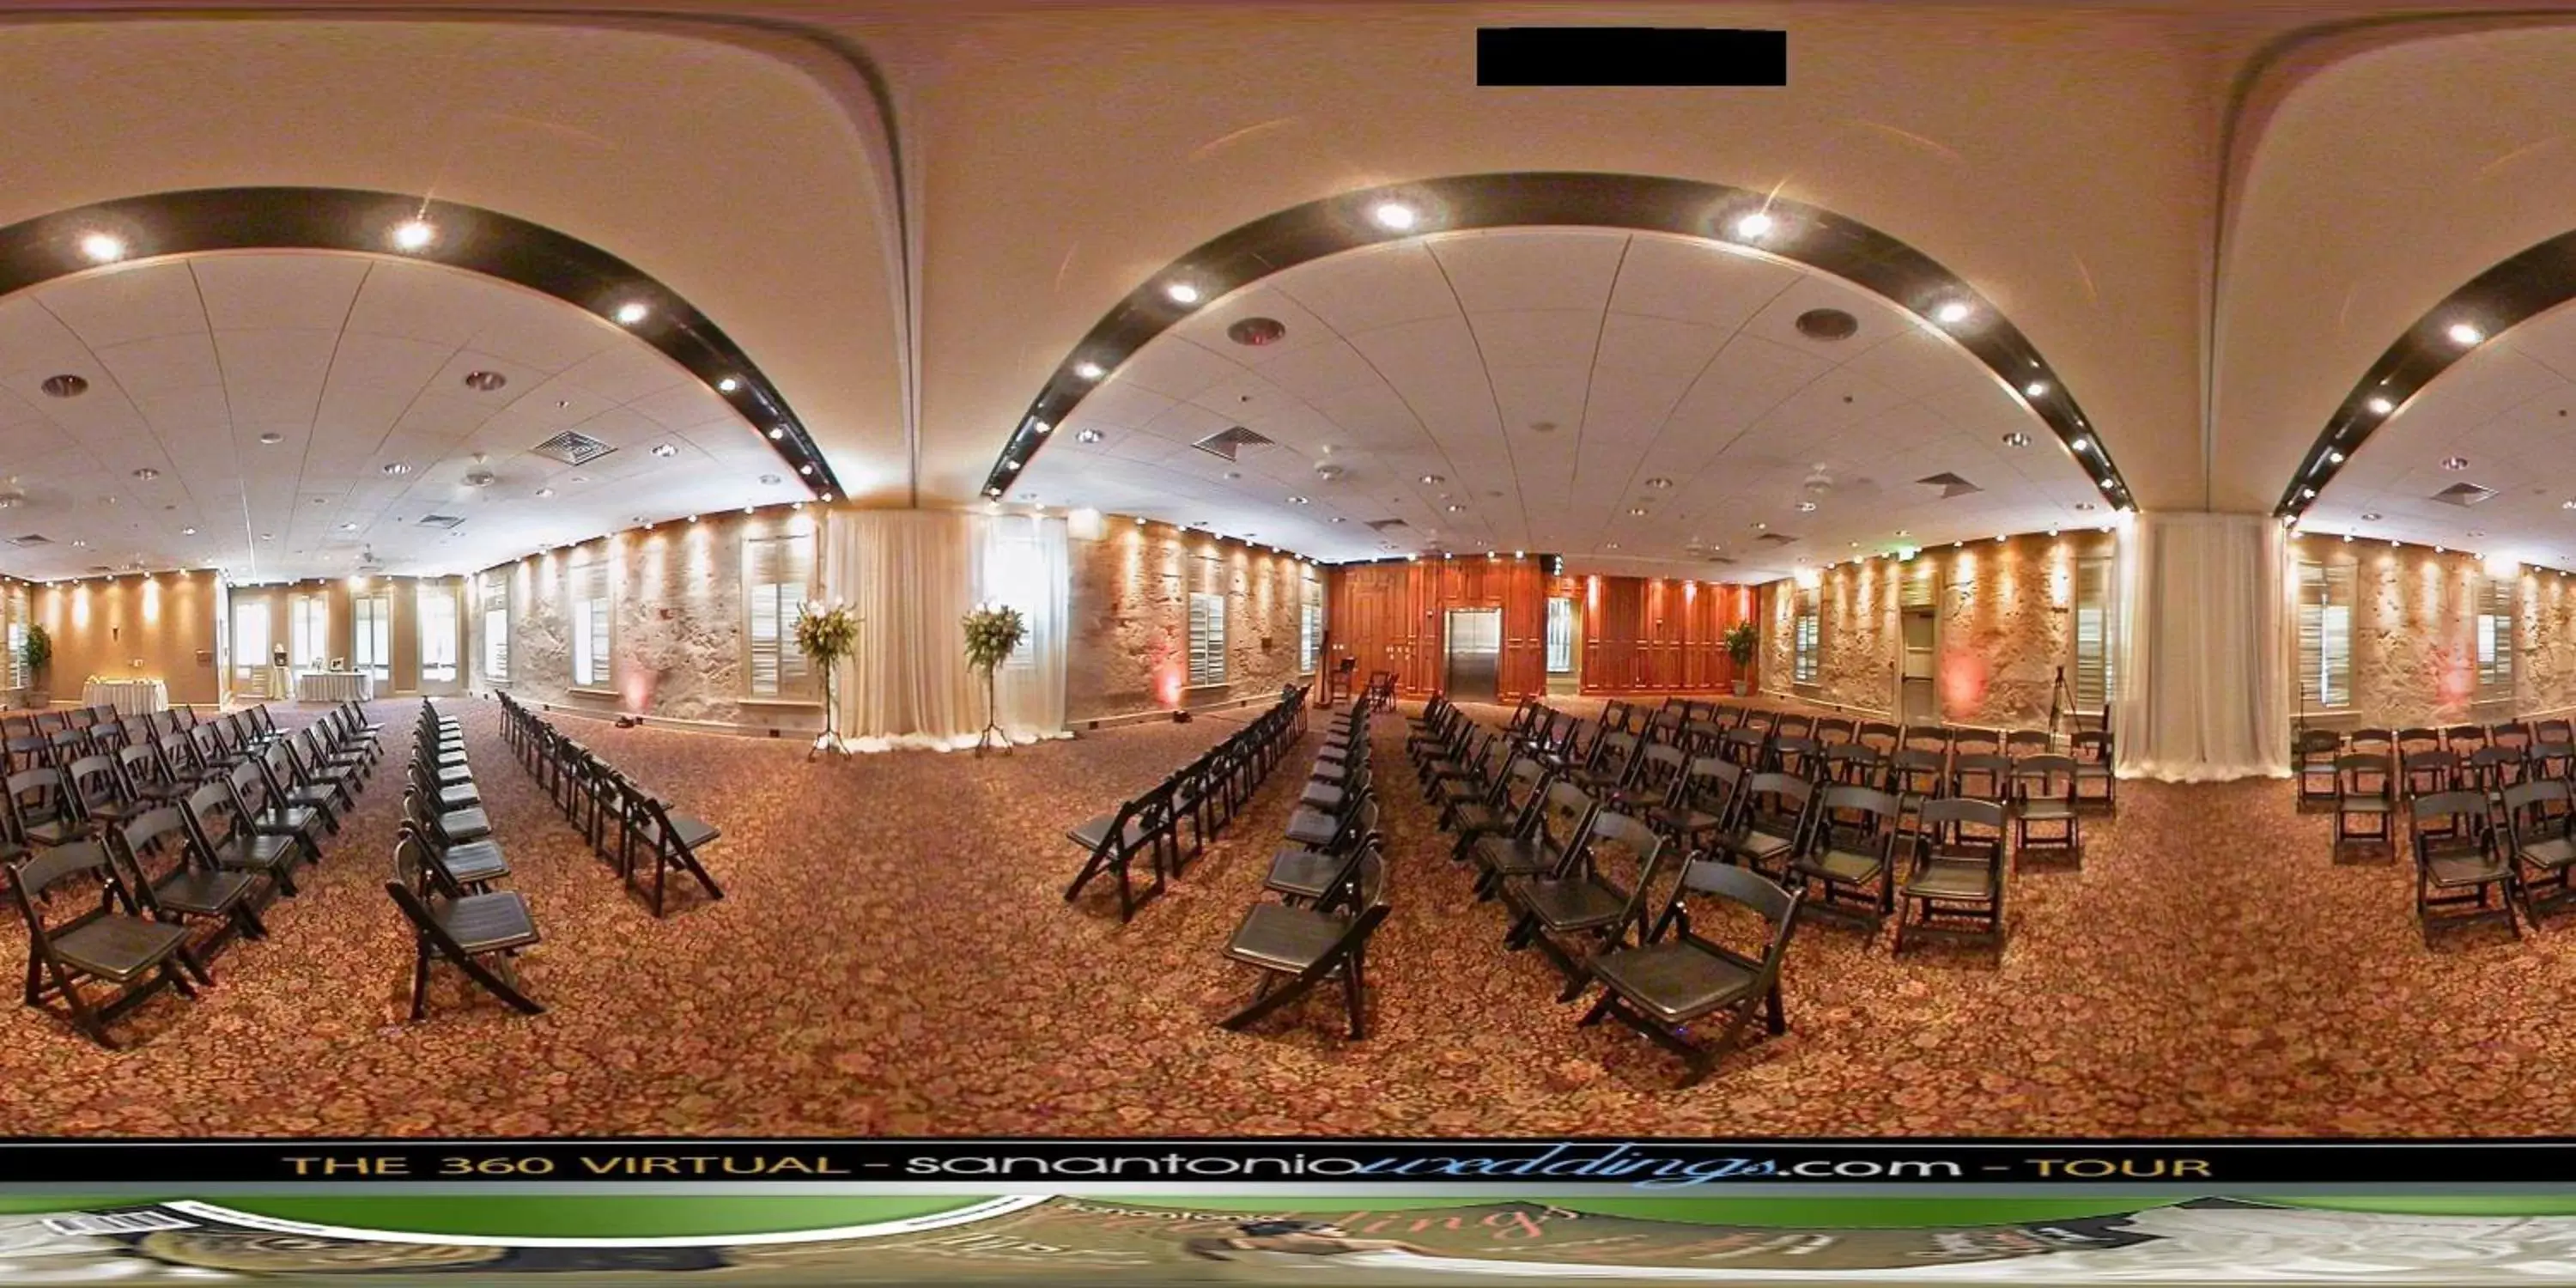 Meeting/conference room, Banquet Facilities in Hilton Palacio del Rio